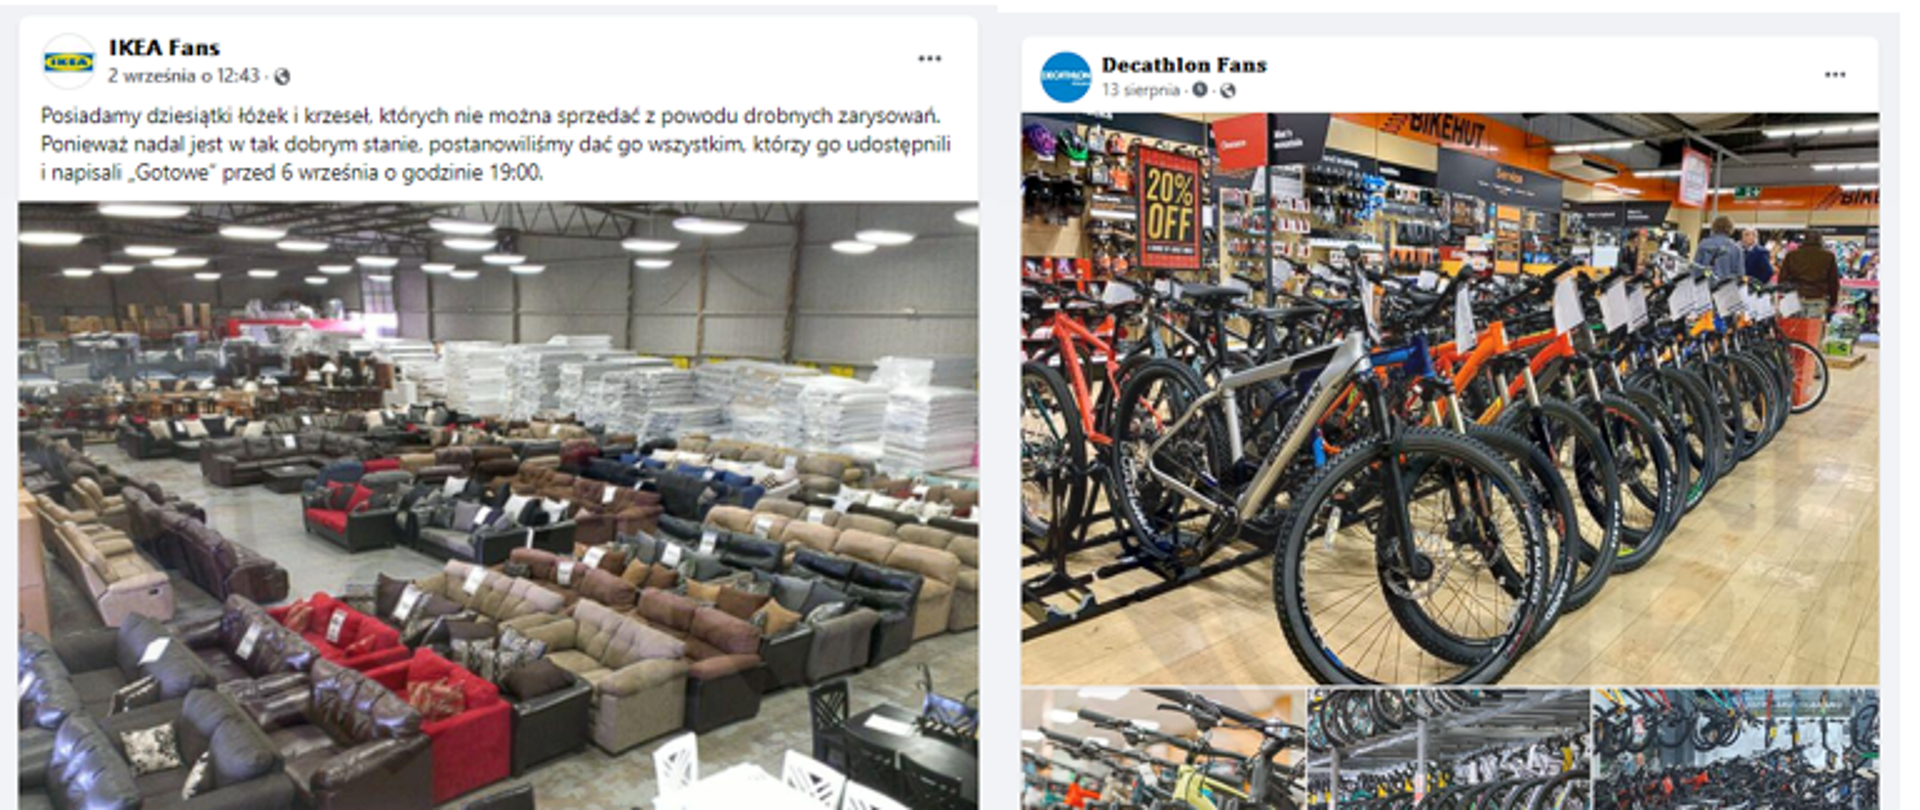 Zdjęcie fałszywych postów konkursowych na portalu Facebook. Po prawej stronie post ze zdjęciem kanap po prawej zdjęcie rowerów